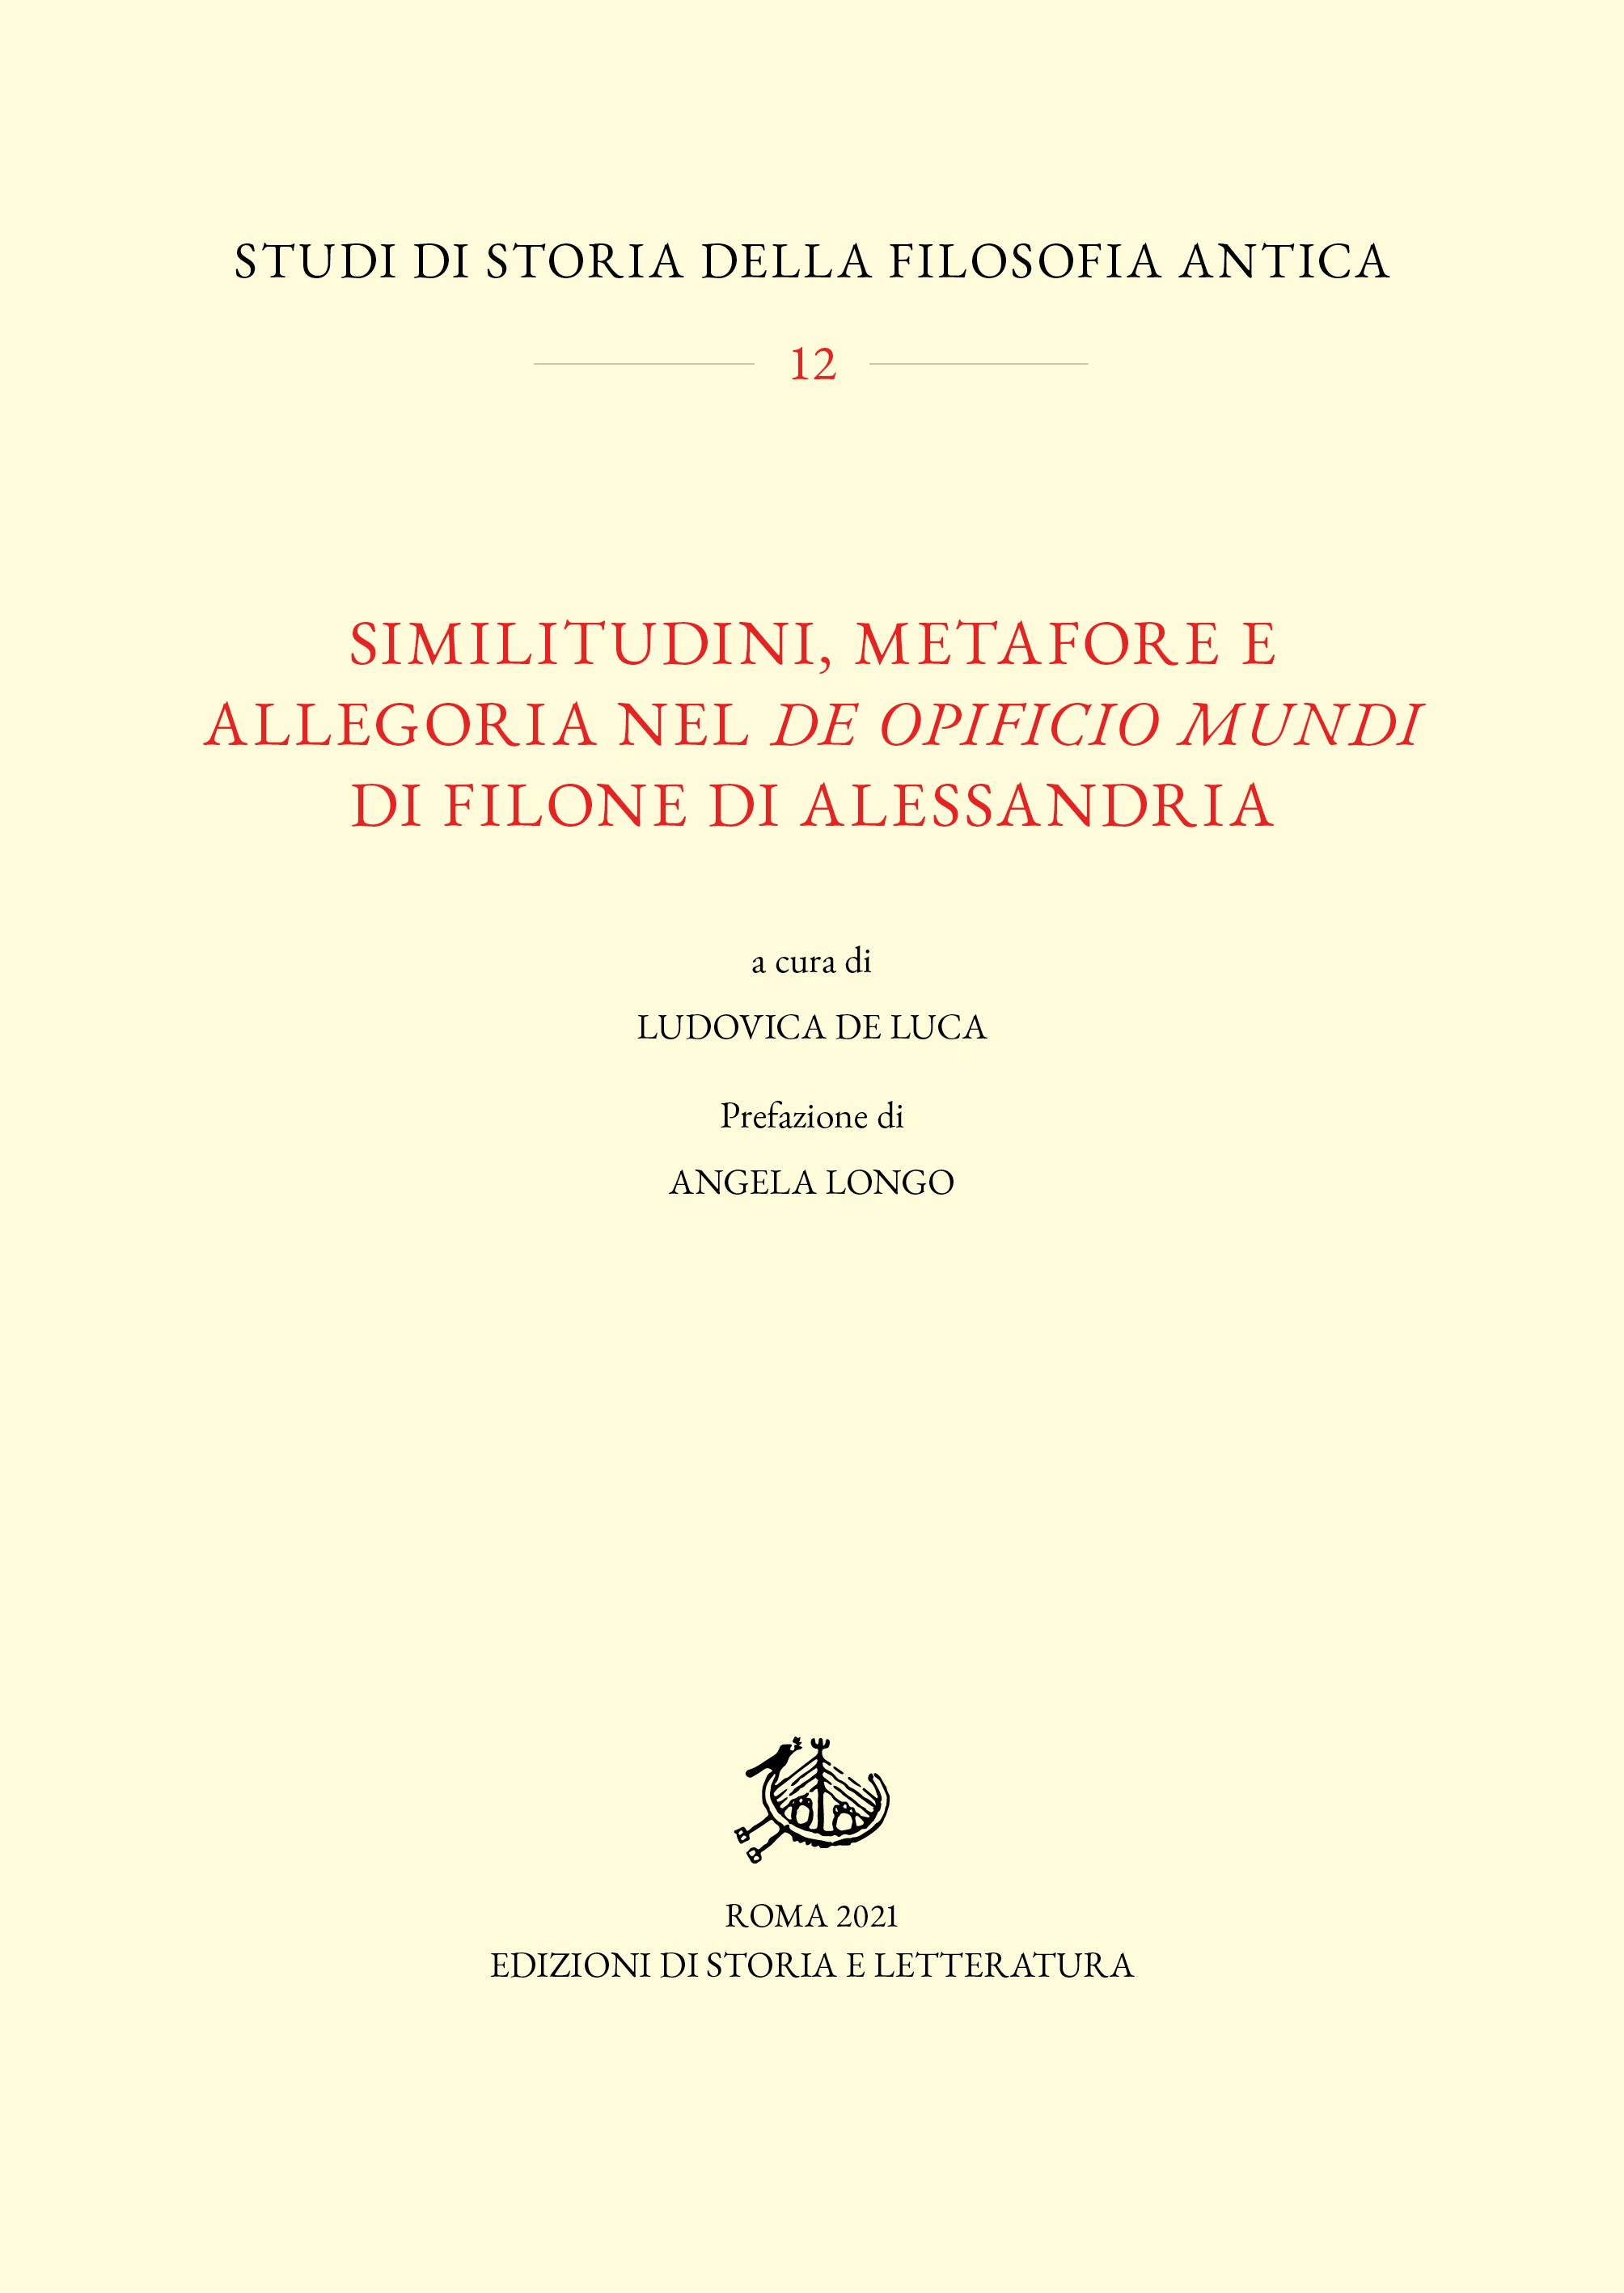 Similitudini, metafore e allegoria nel De opificio mundi di Filone di Alessandria - Librerie.coop